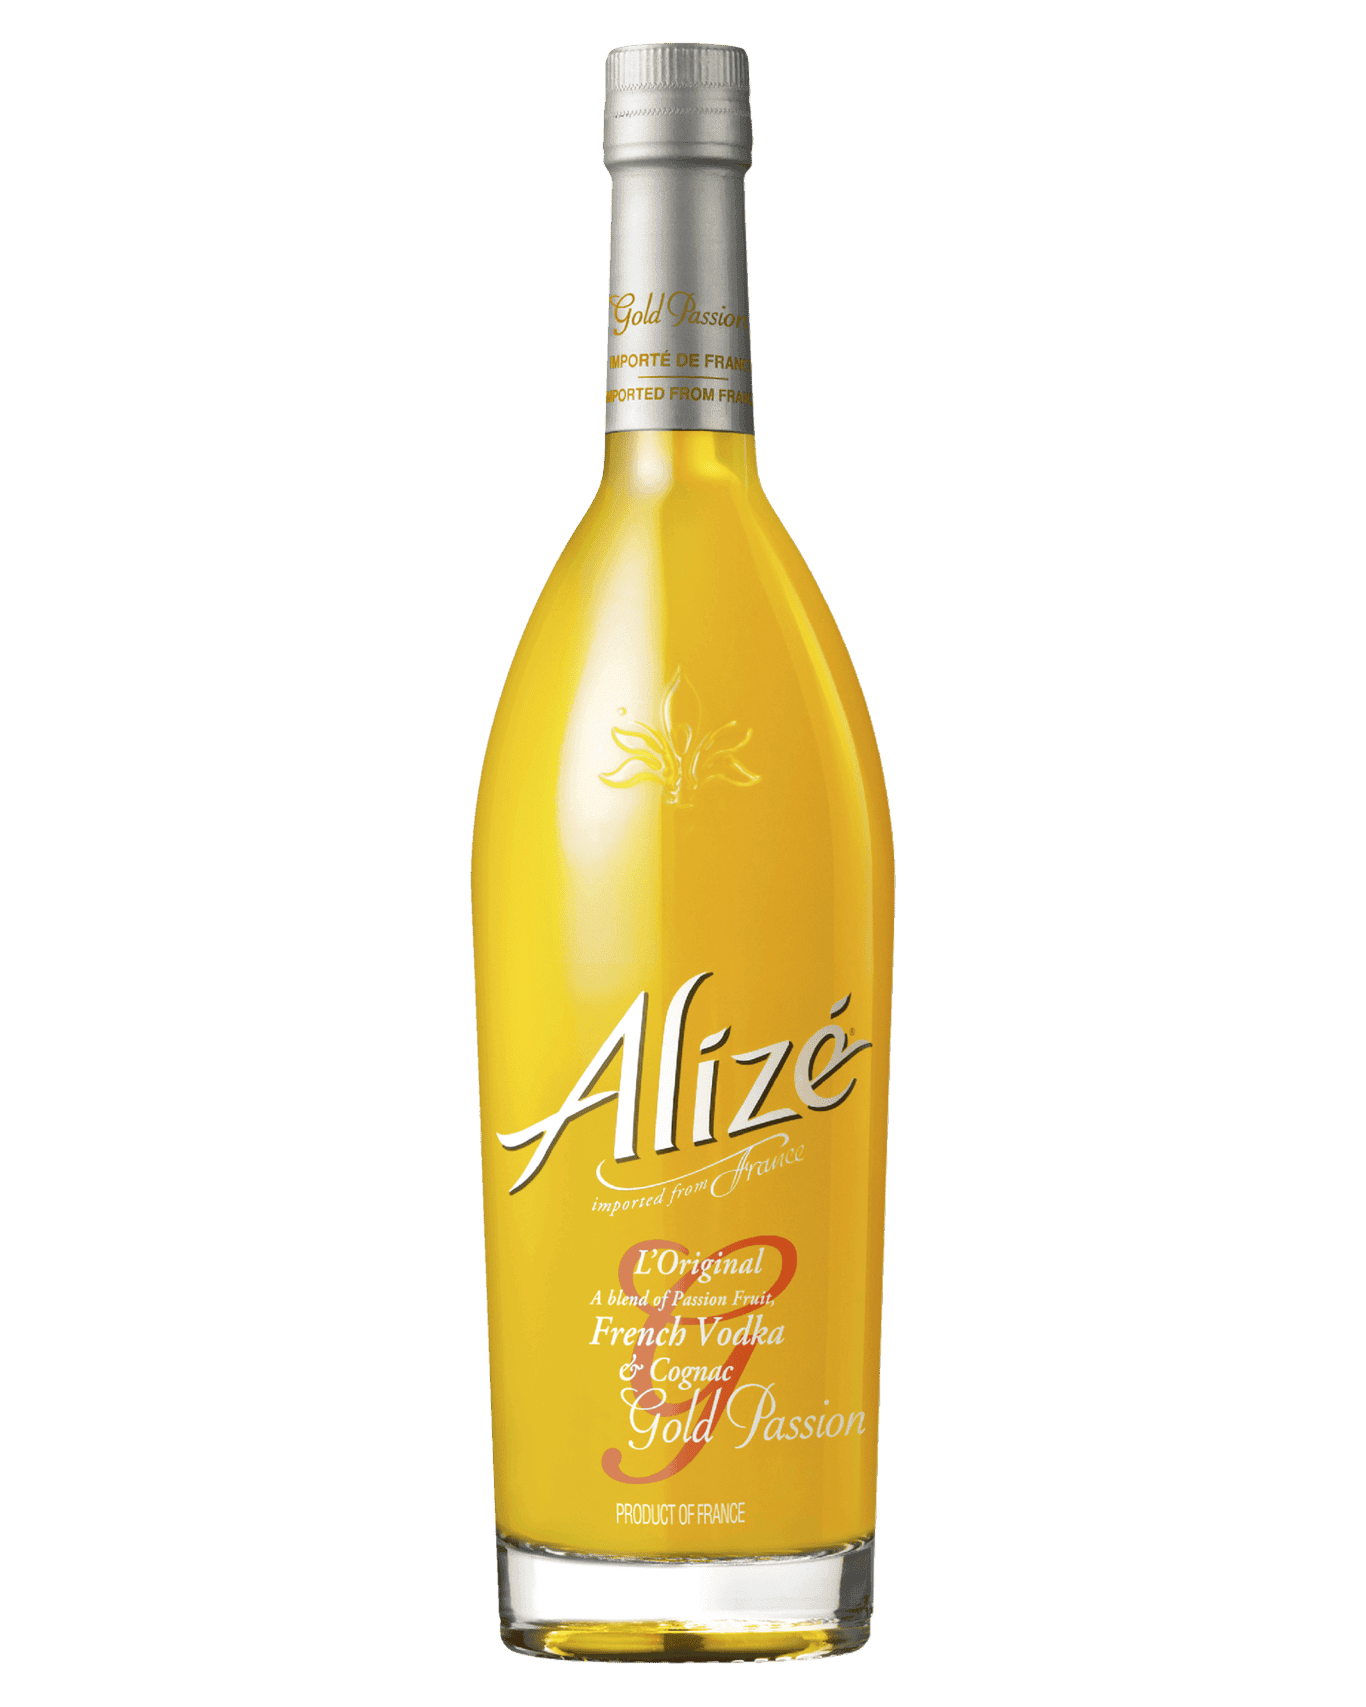 Alize Gold Passion Cognac Liqueur 16% ABV 750ml